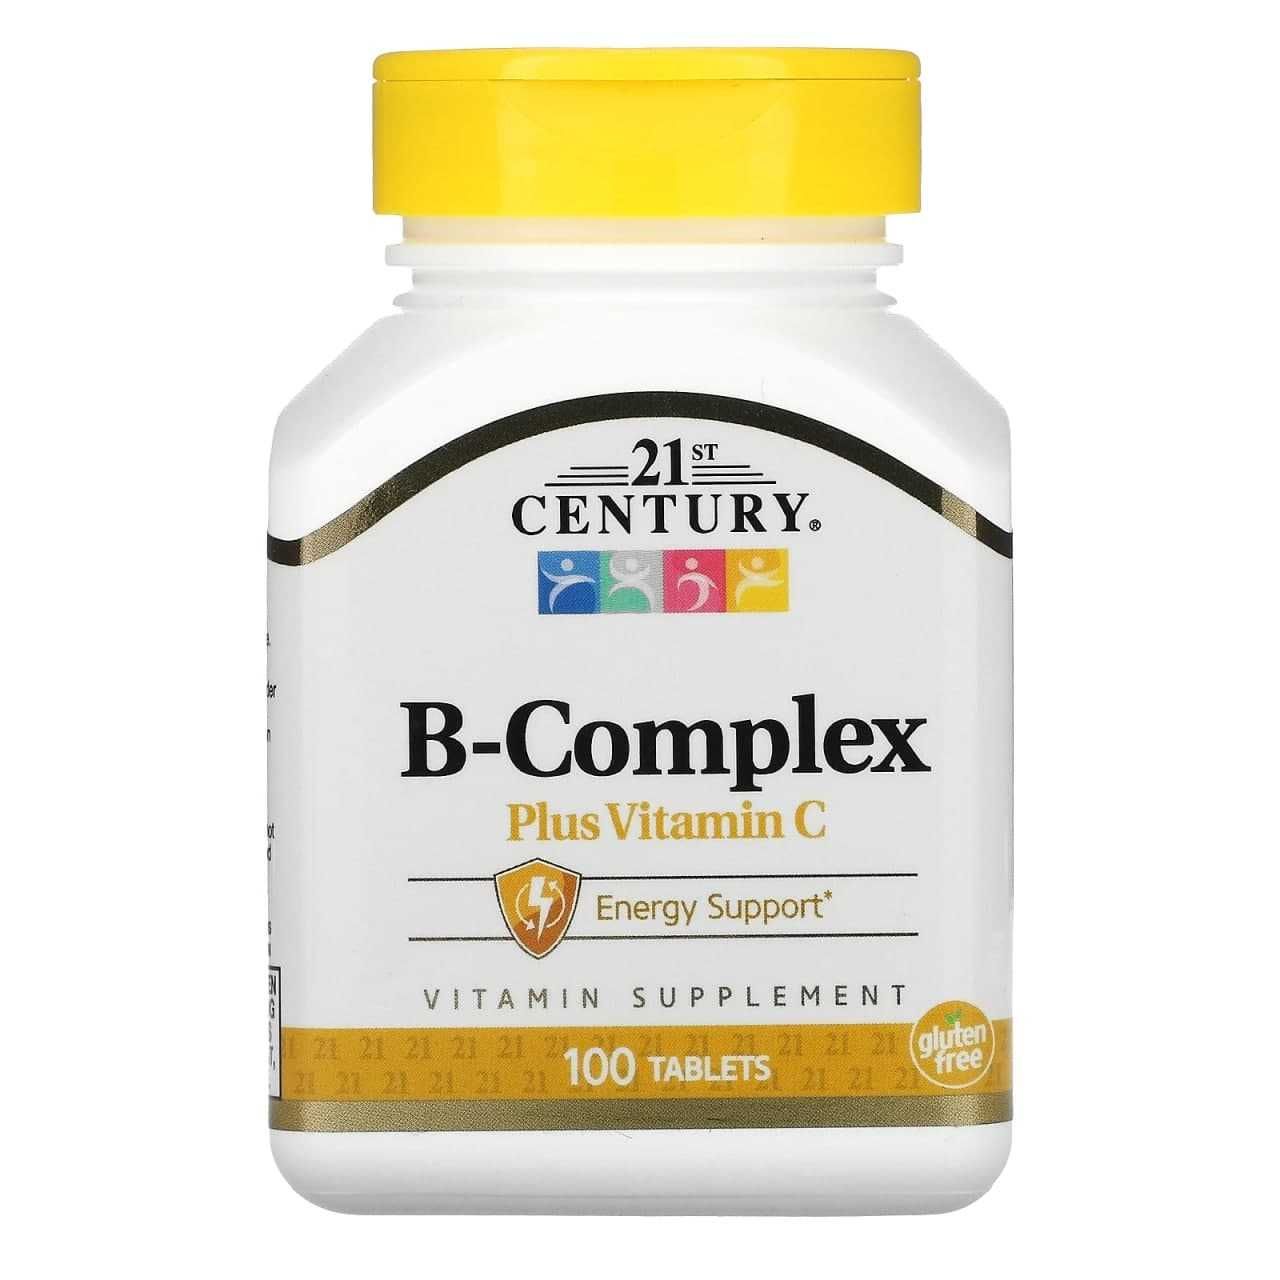 B-complex with vitamin C, Б-комплекс + Витамин С, B-kompleks